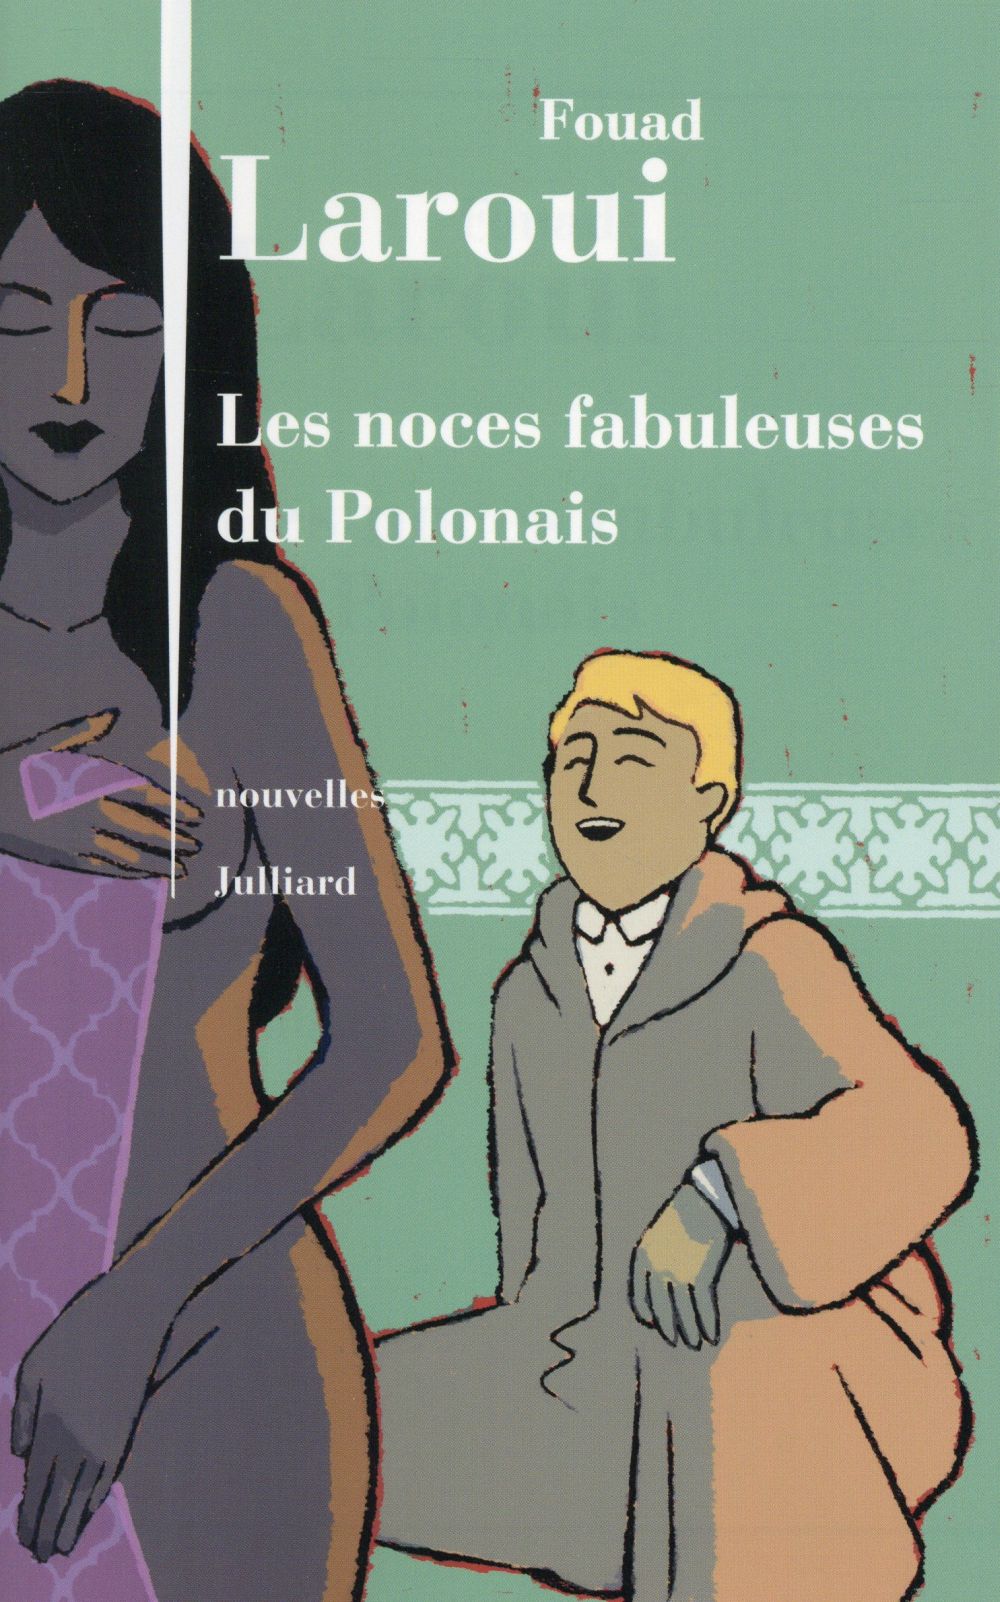 "Les noces fabuleuses du Polonais" de Fouad Laroui - la chronique #31 du Club des Explorateurs